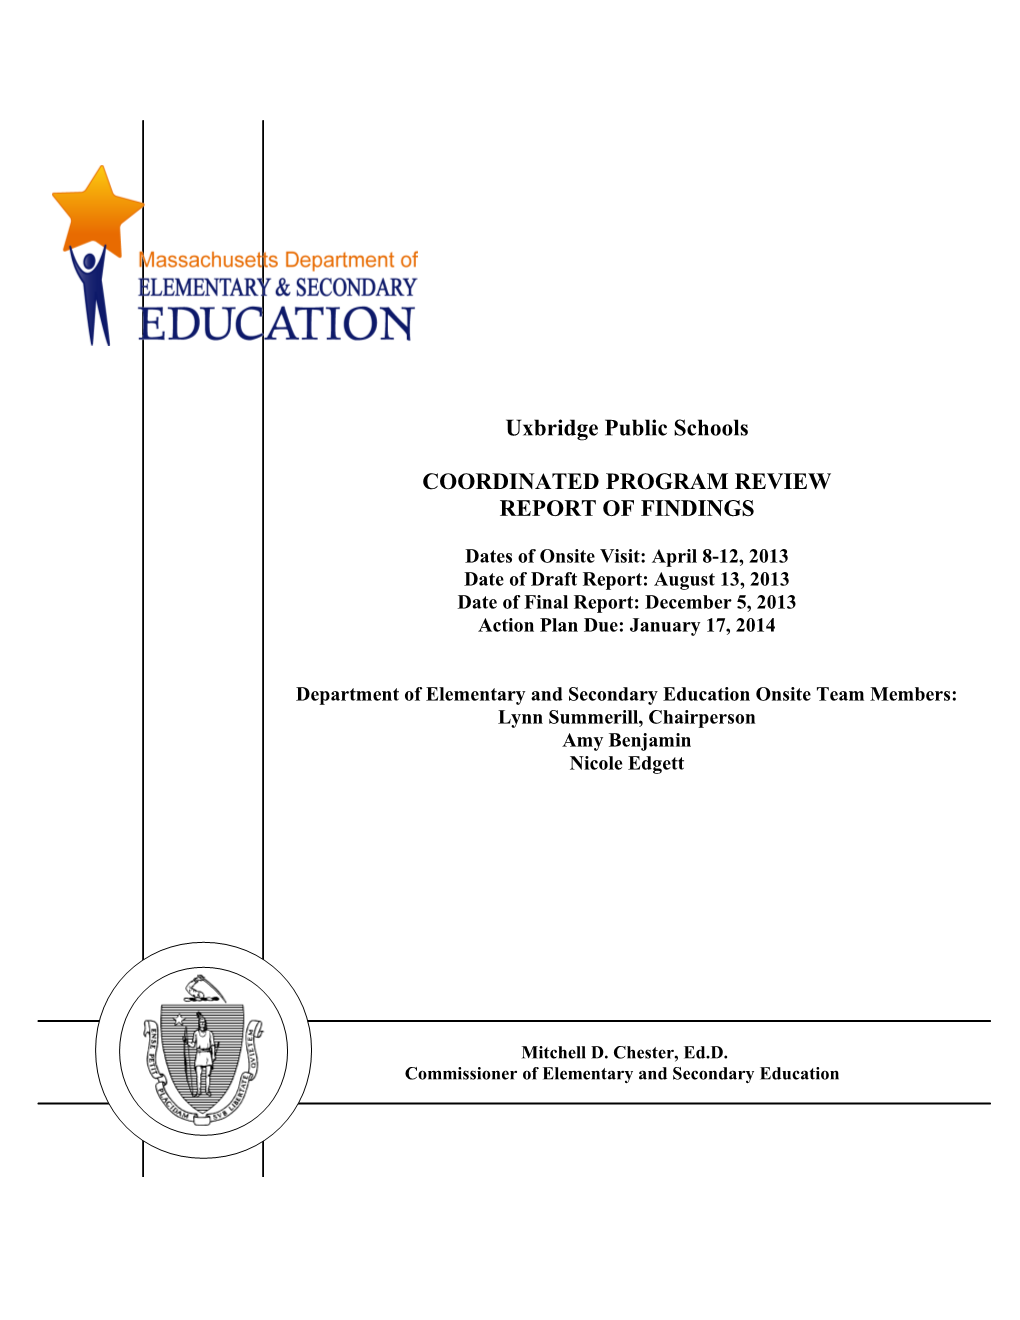 Uxbridge Public Schools CPR Final Report 2013